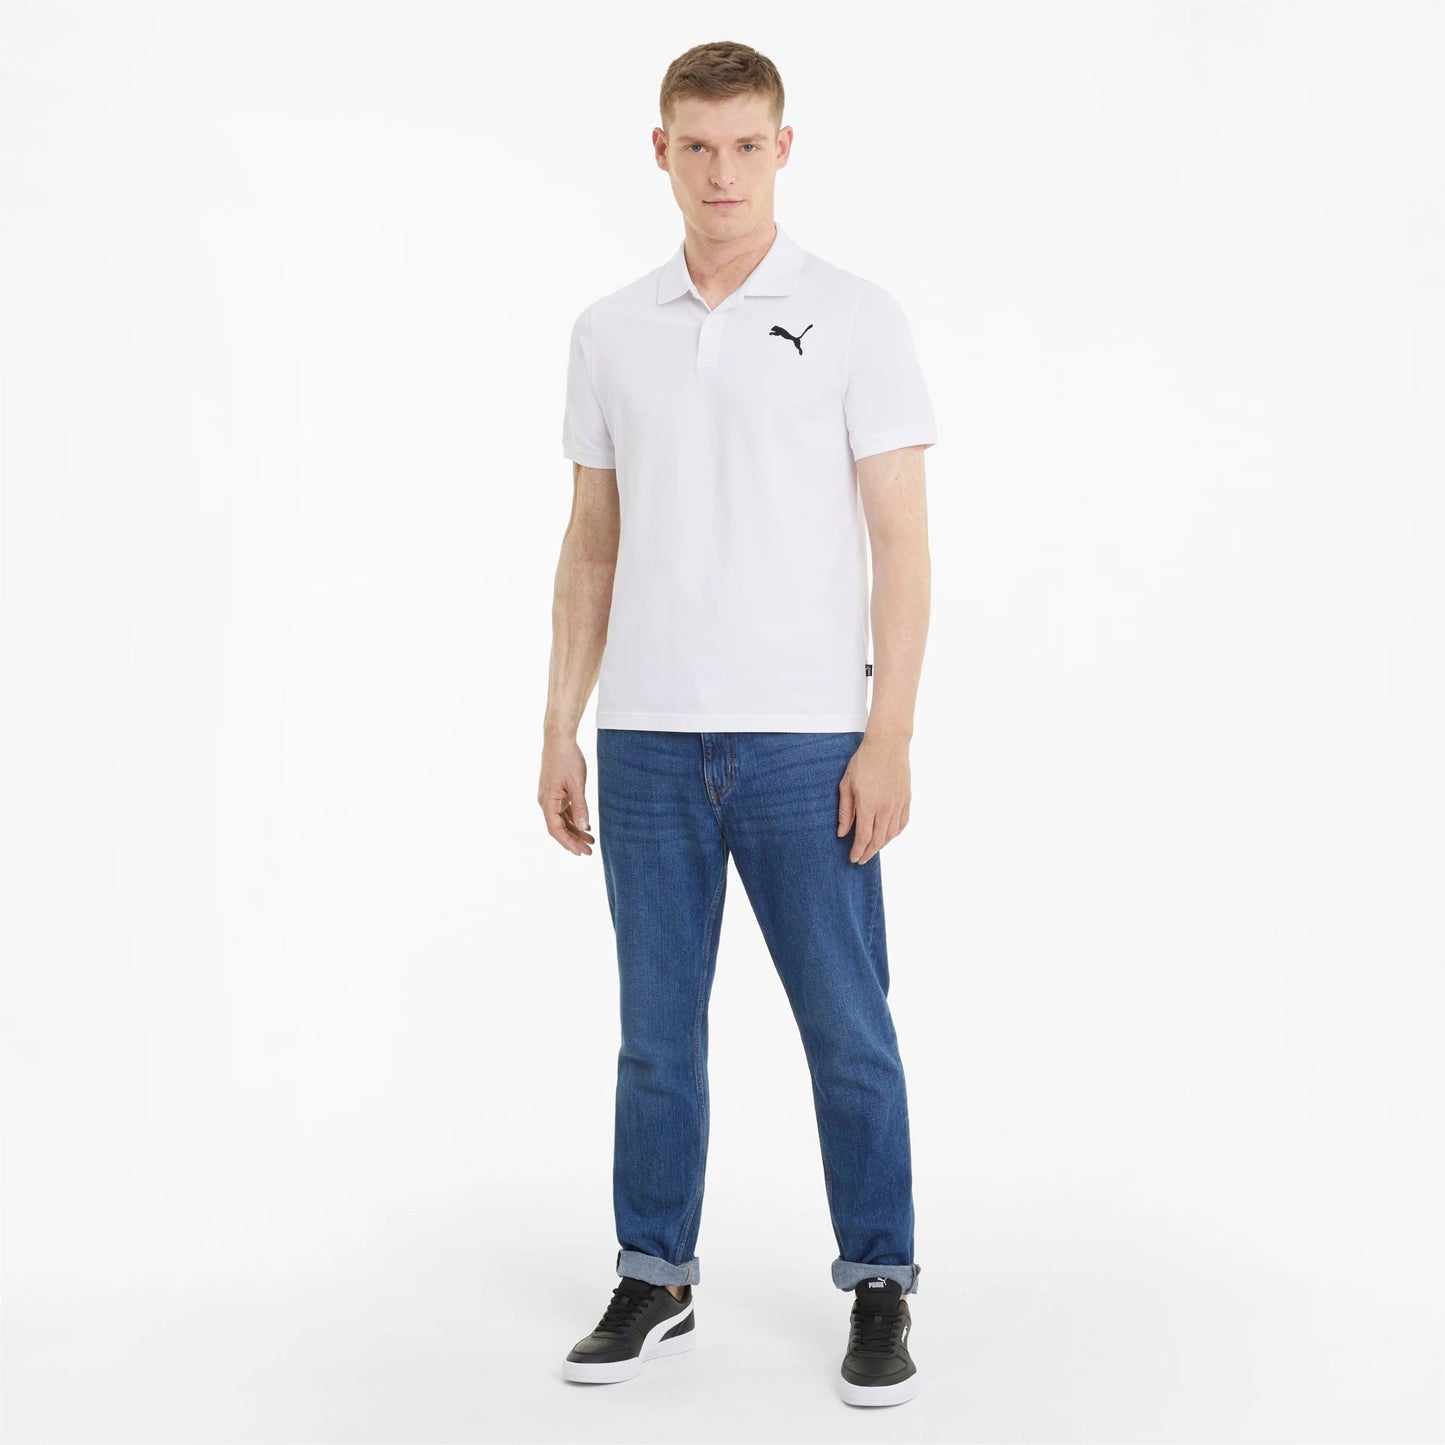 PUMA - חולצת פולו לגבר בצבע לבן - MASHBIR//365